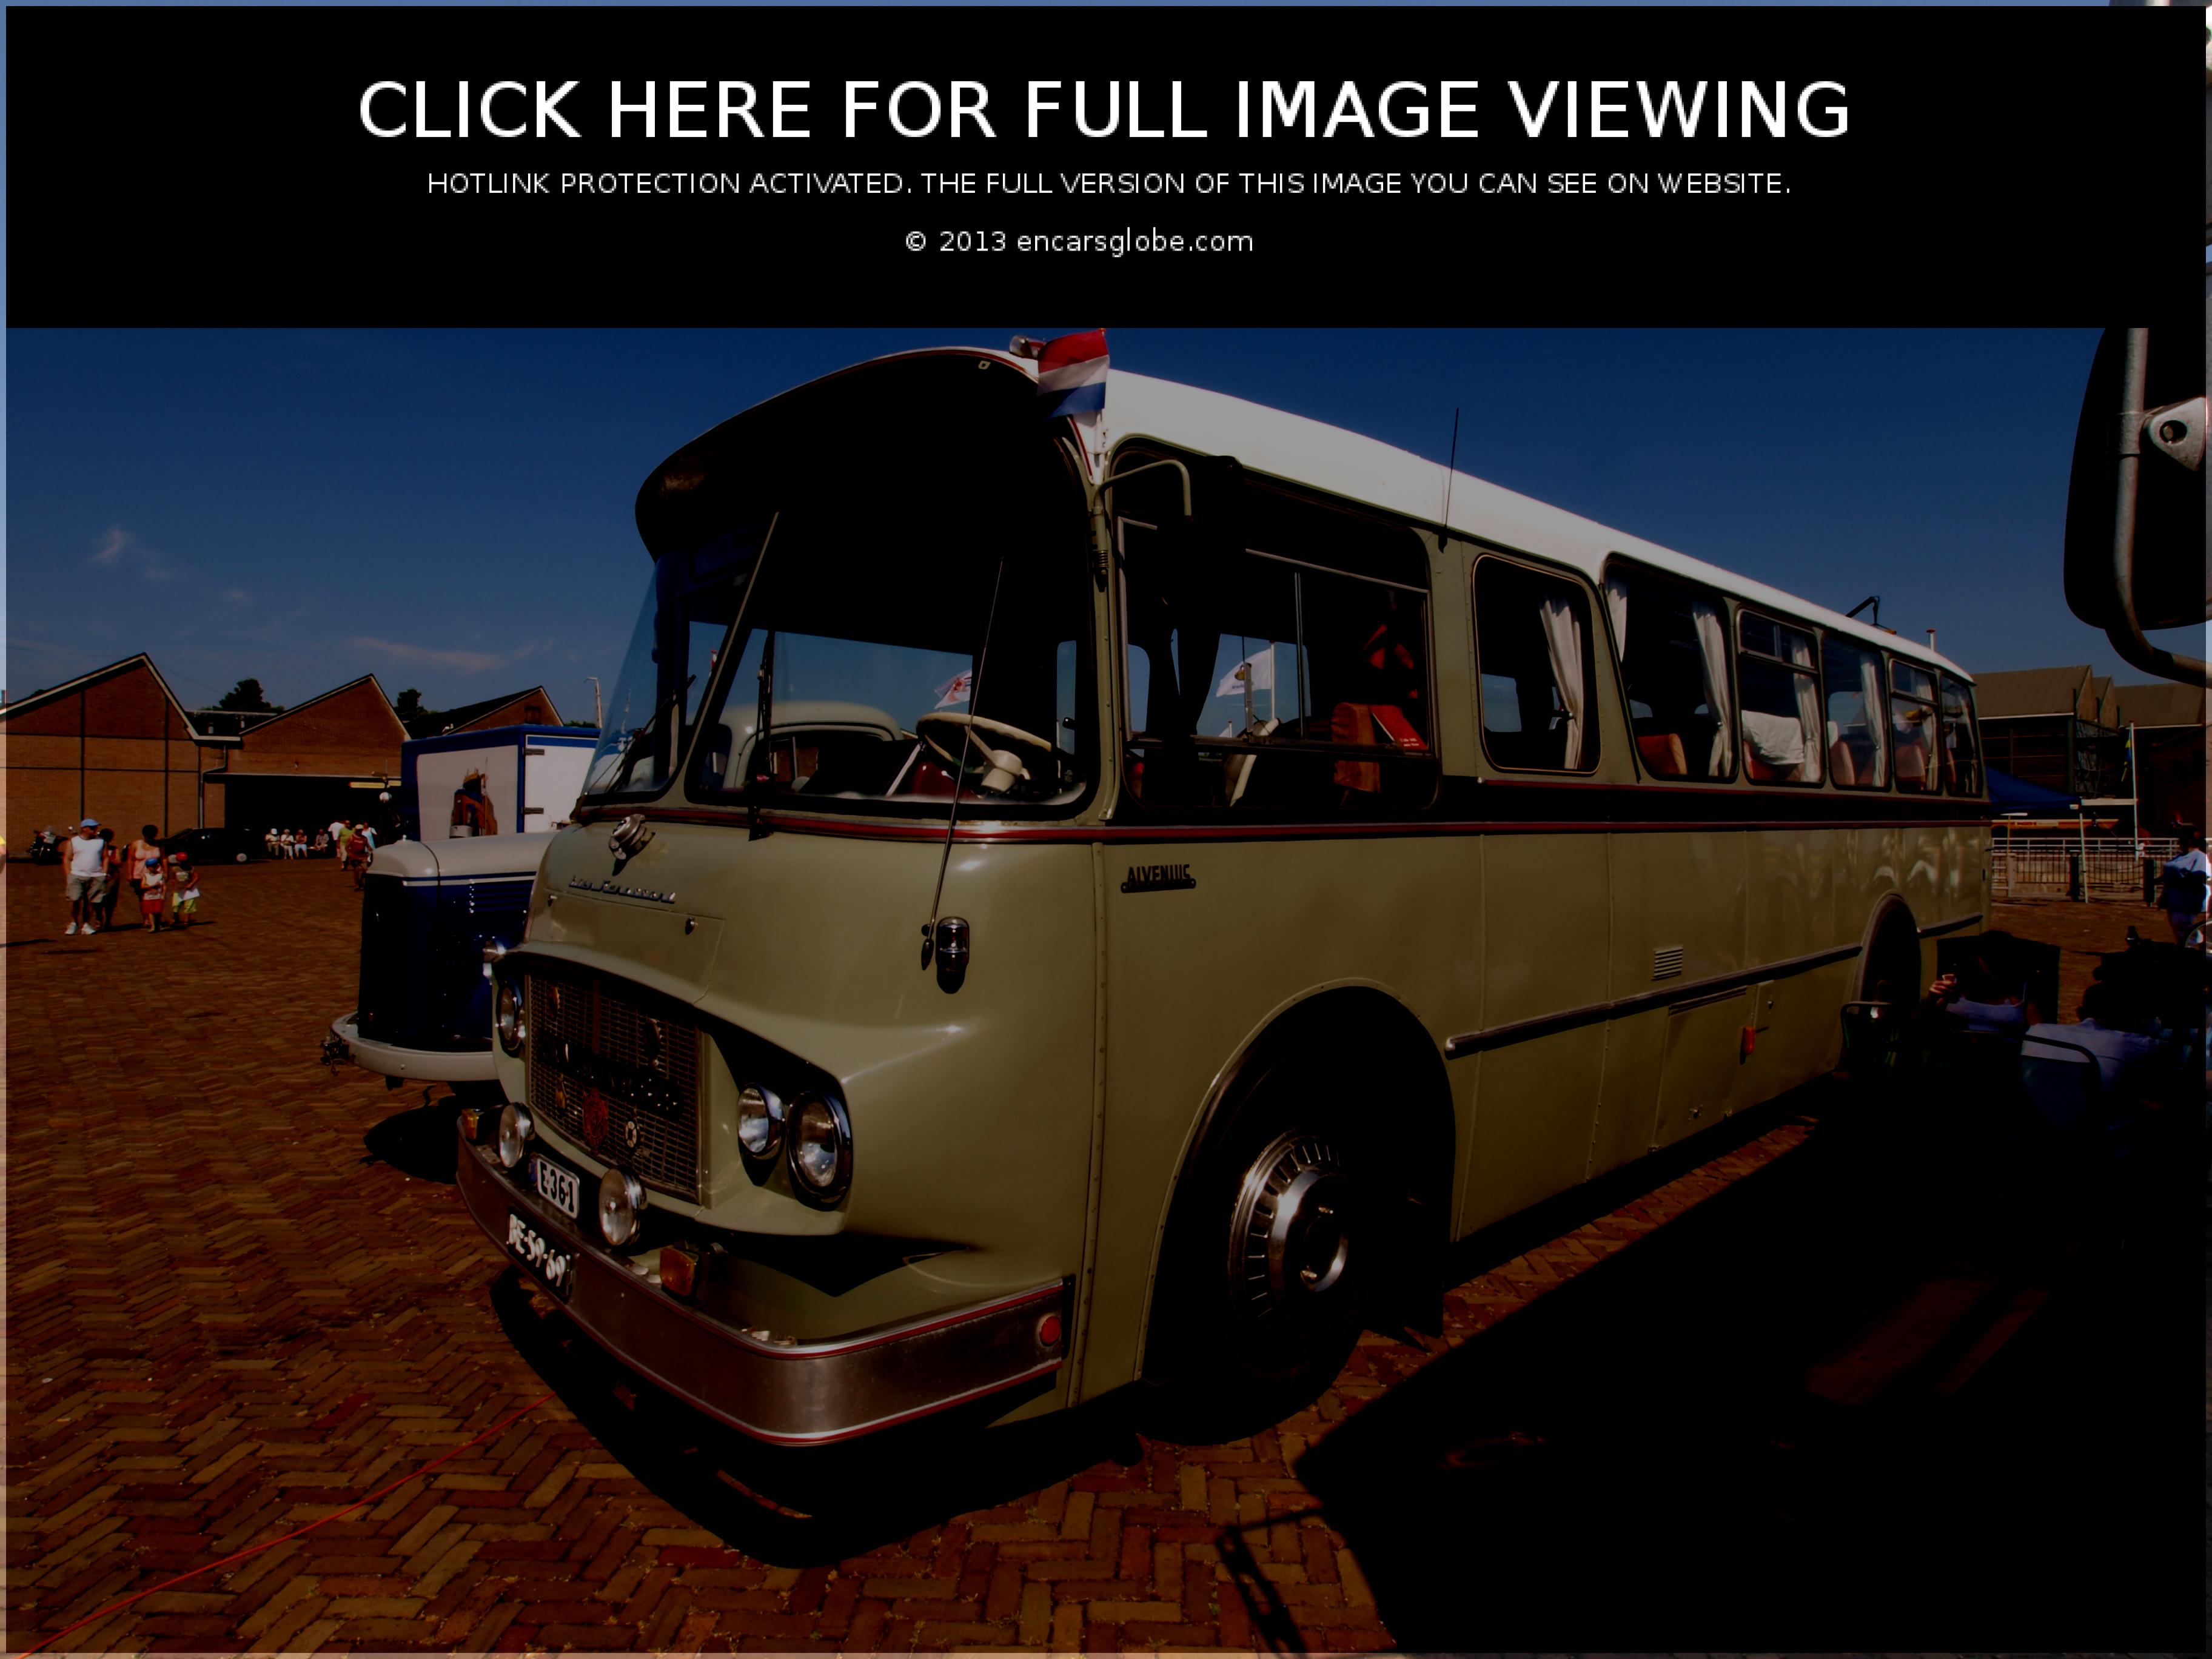 Scania-Vabis B56: Galerie de photos, informations complètes sur le modèle...